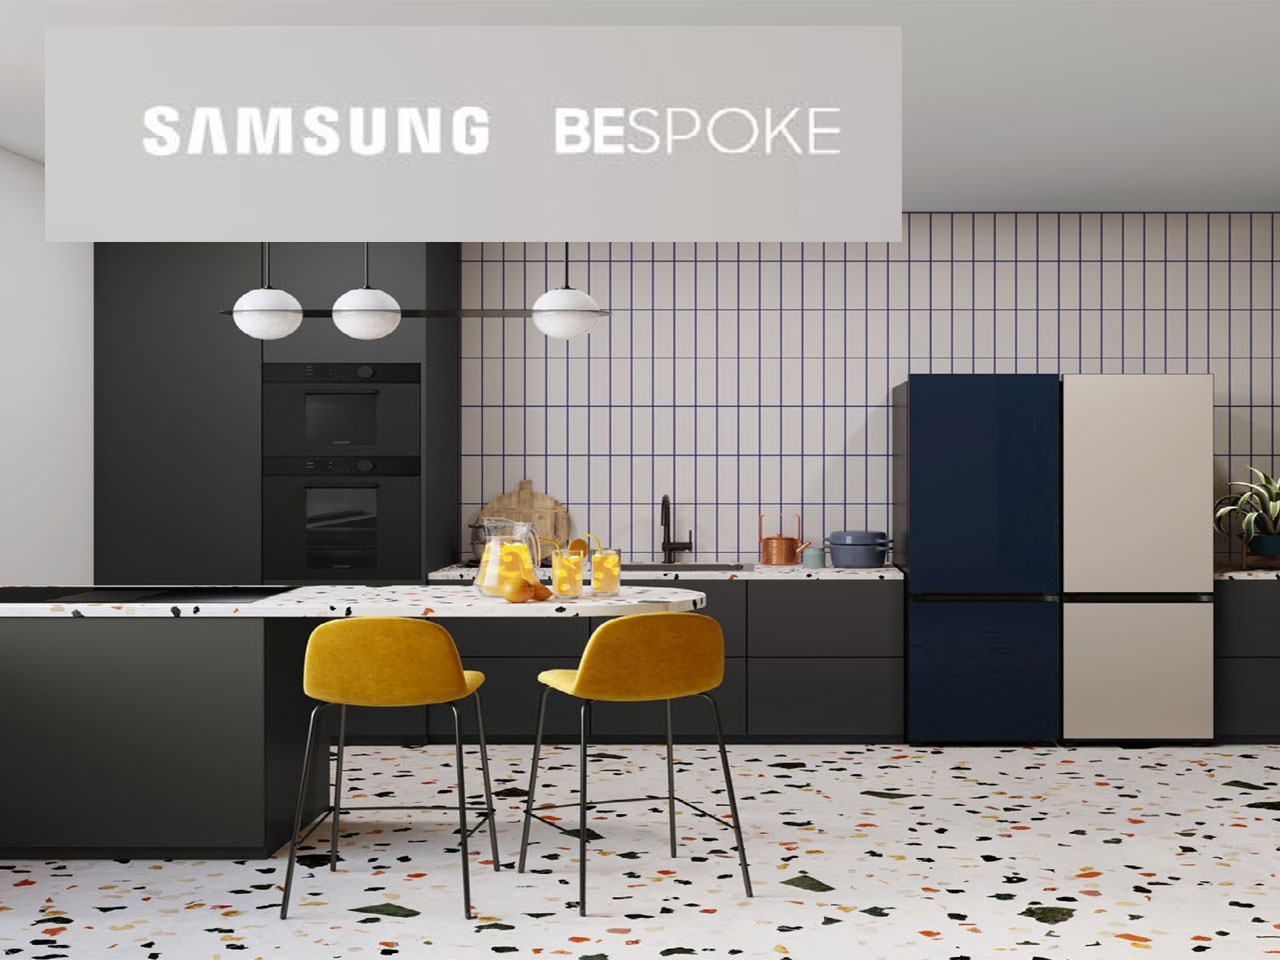 SAMSUNG lance BESPOKE, une gamme de réfrigérateurs sur-mesure et personnalisable